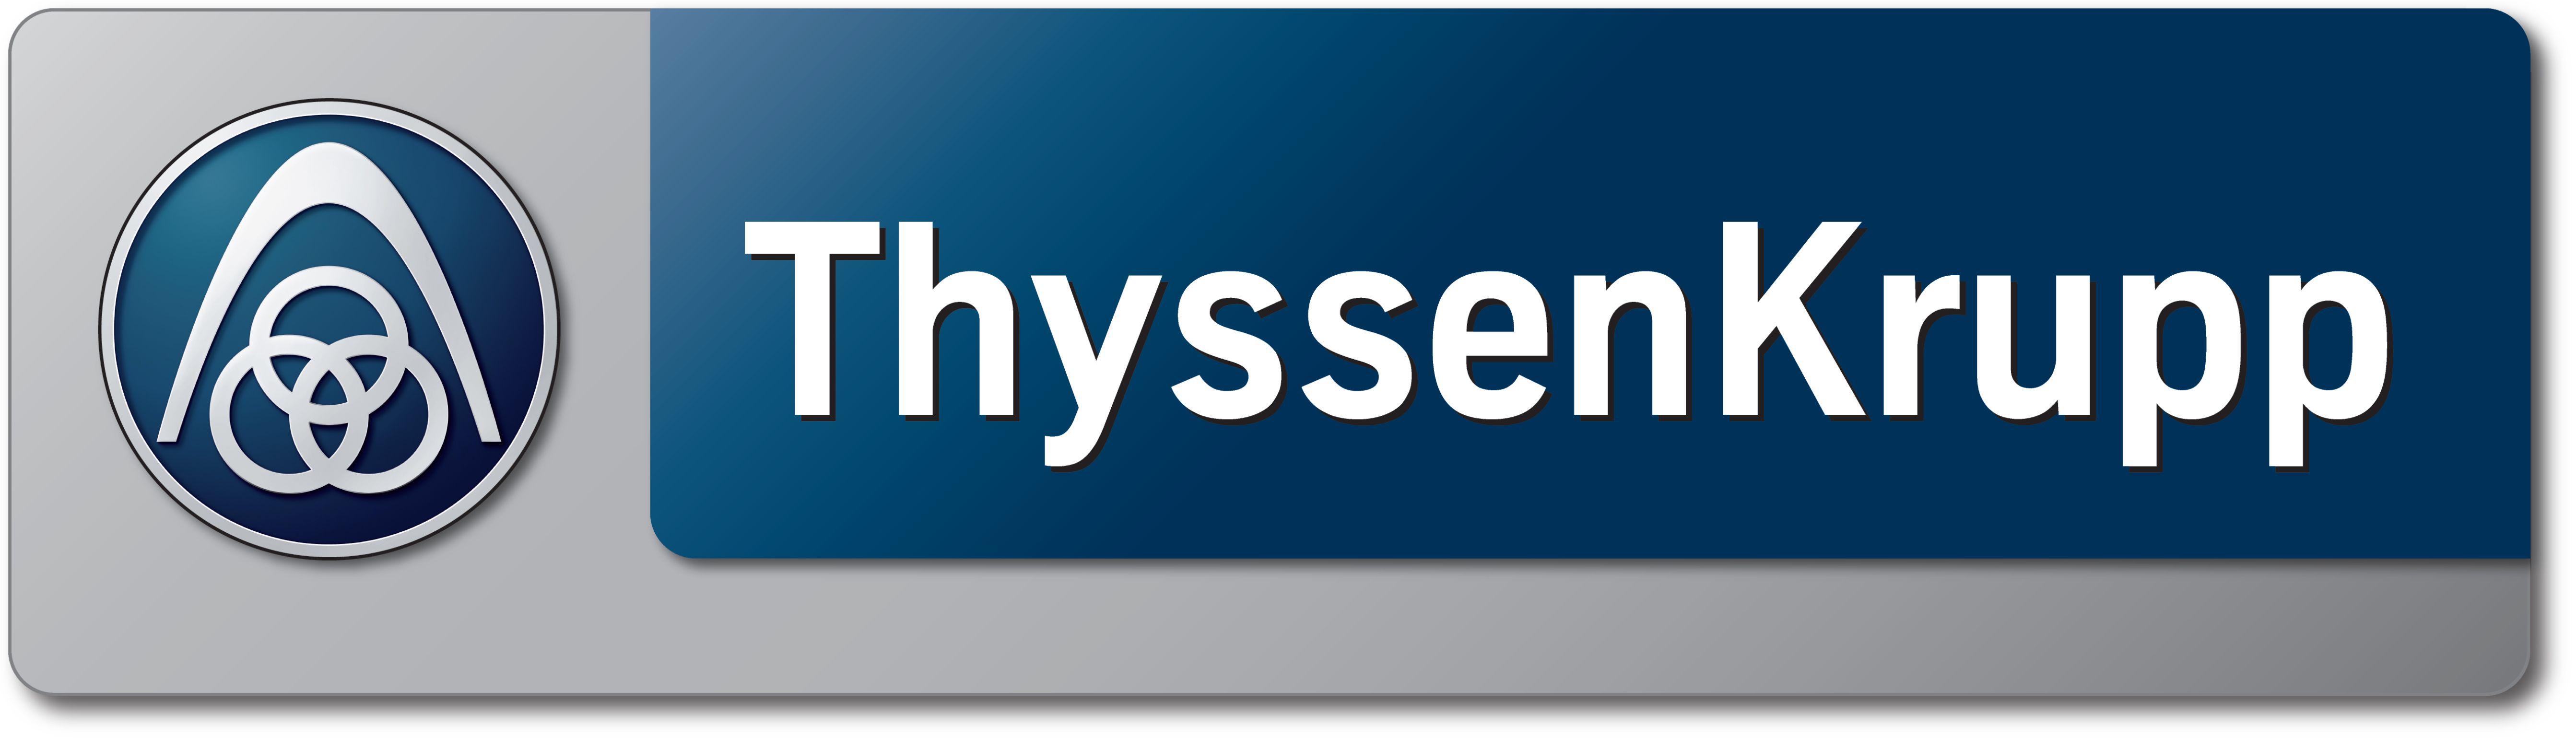 ThyssenKrupp Logo - File:ThyssenKruppLogo.jpg - Wikimedia Commons